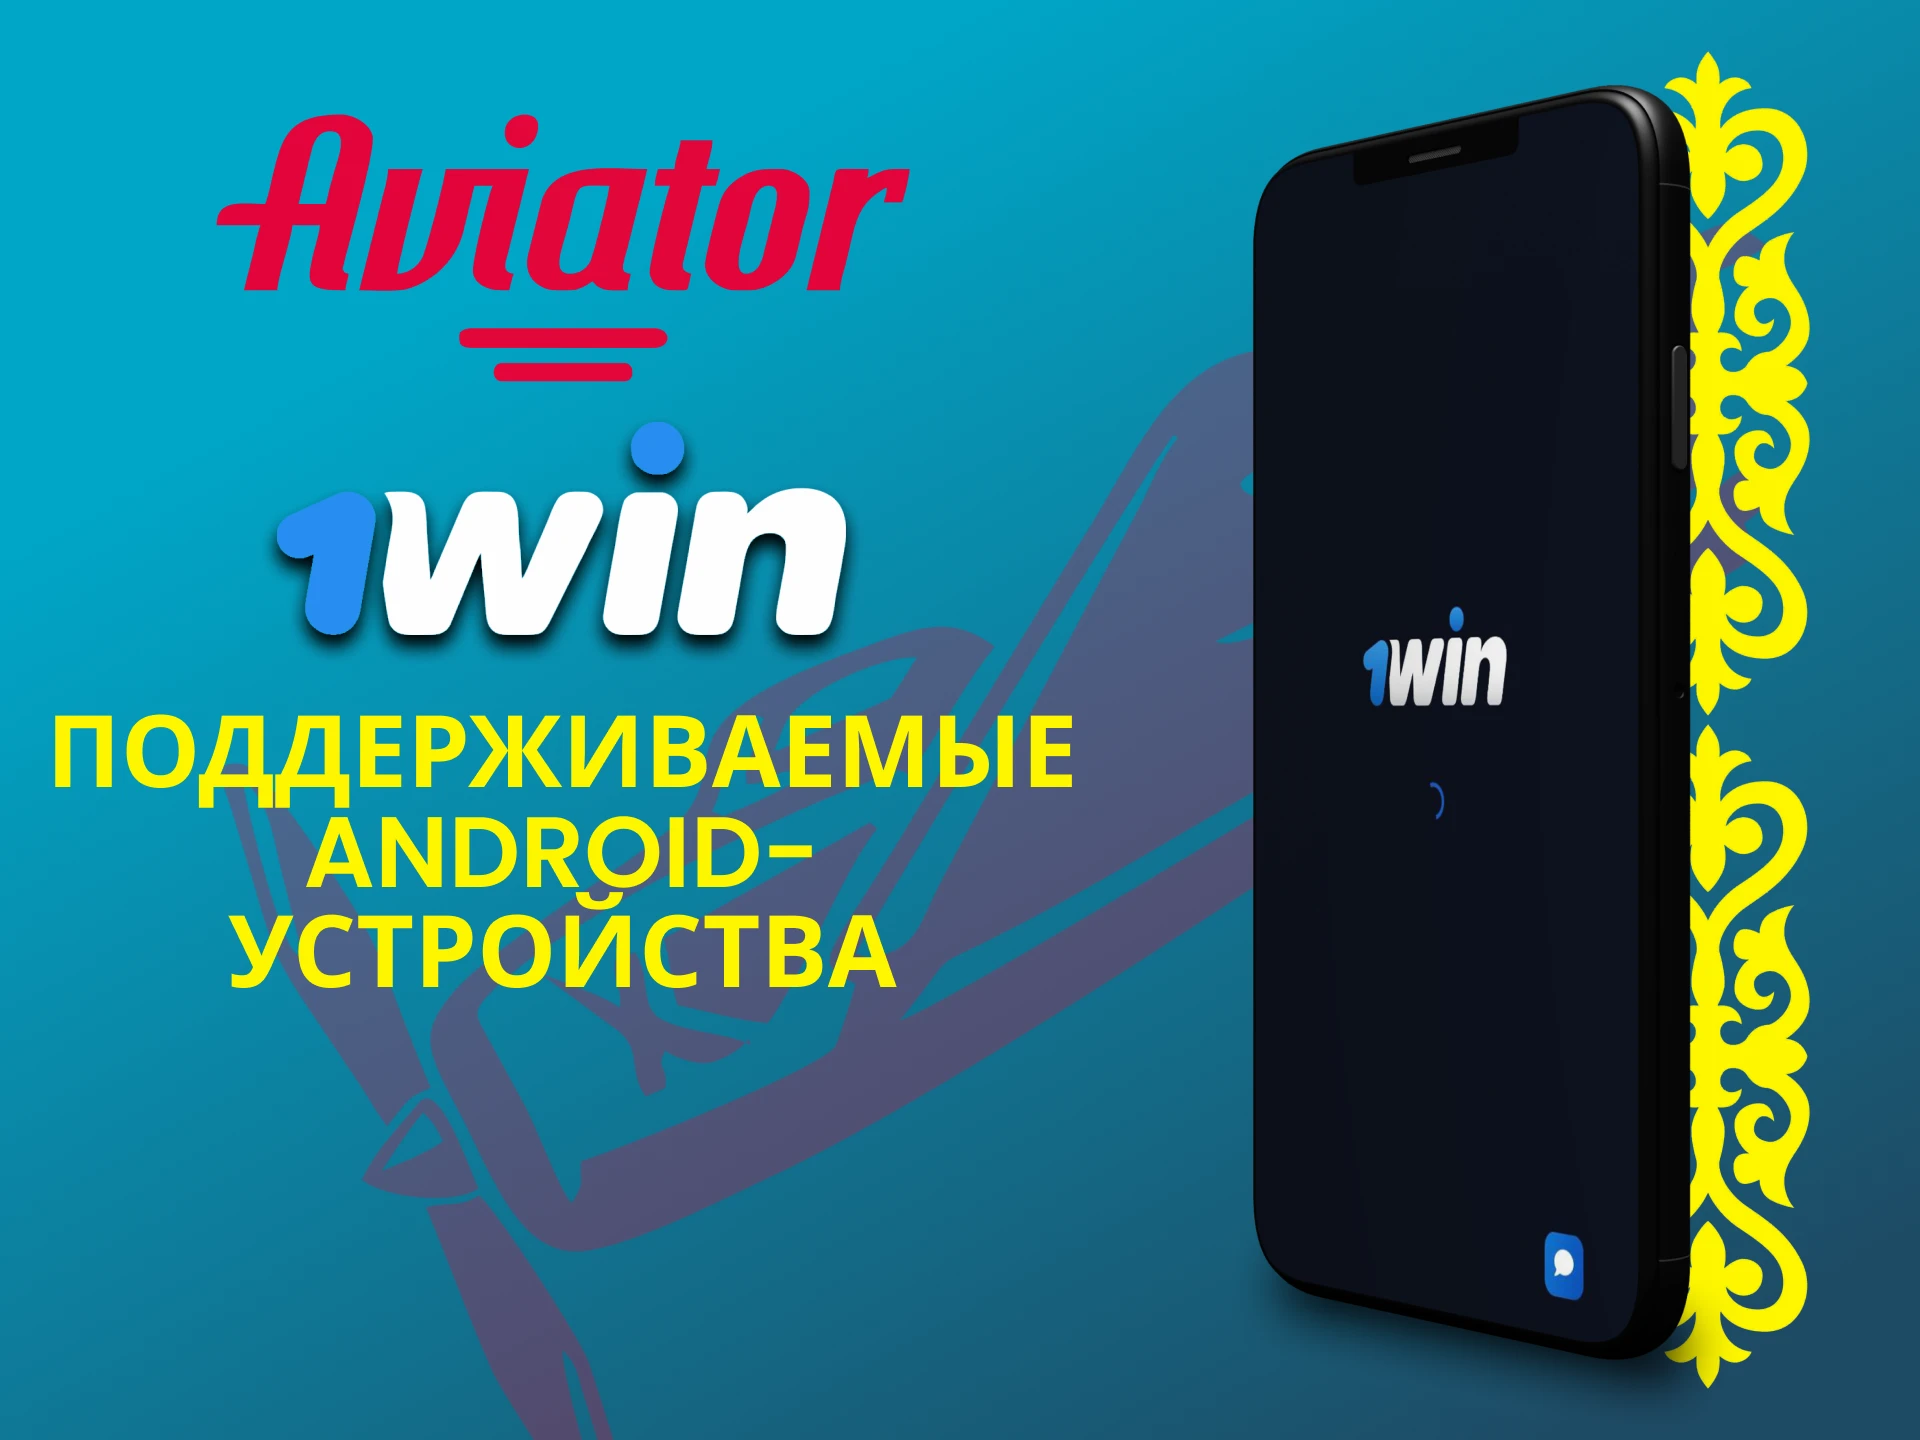 Играй в Авиатор через приложение 1win на своем Android устройстве.